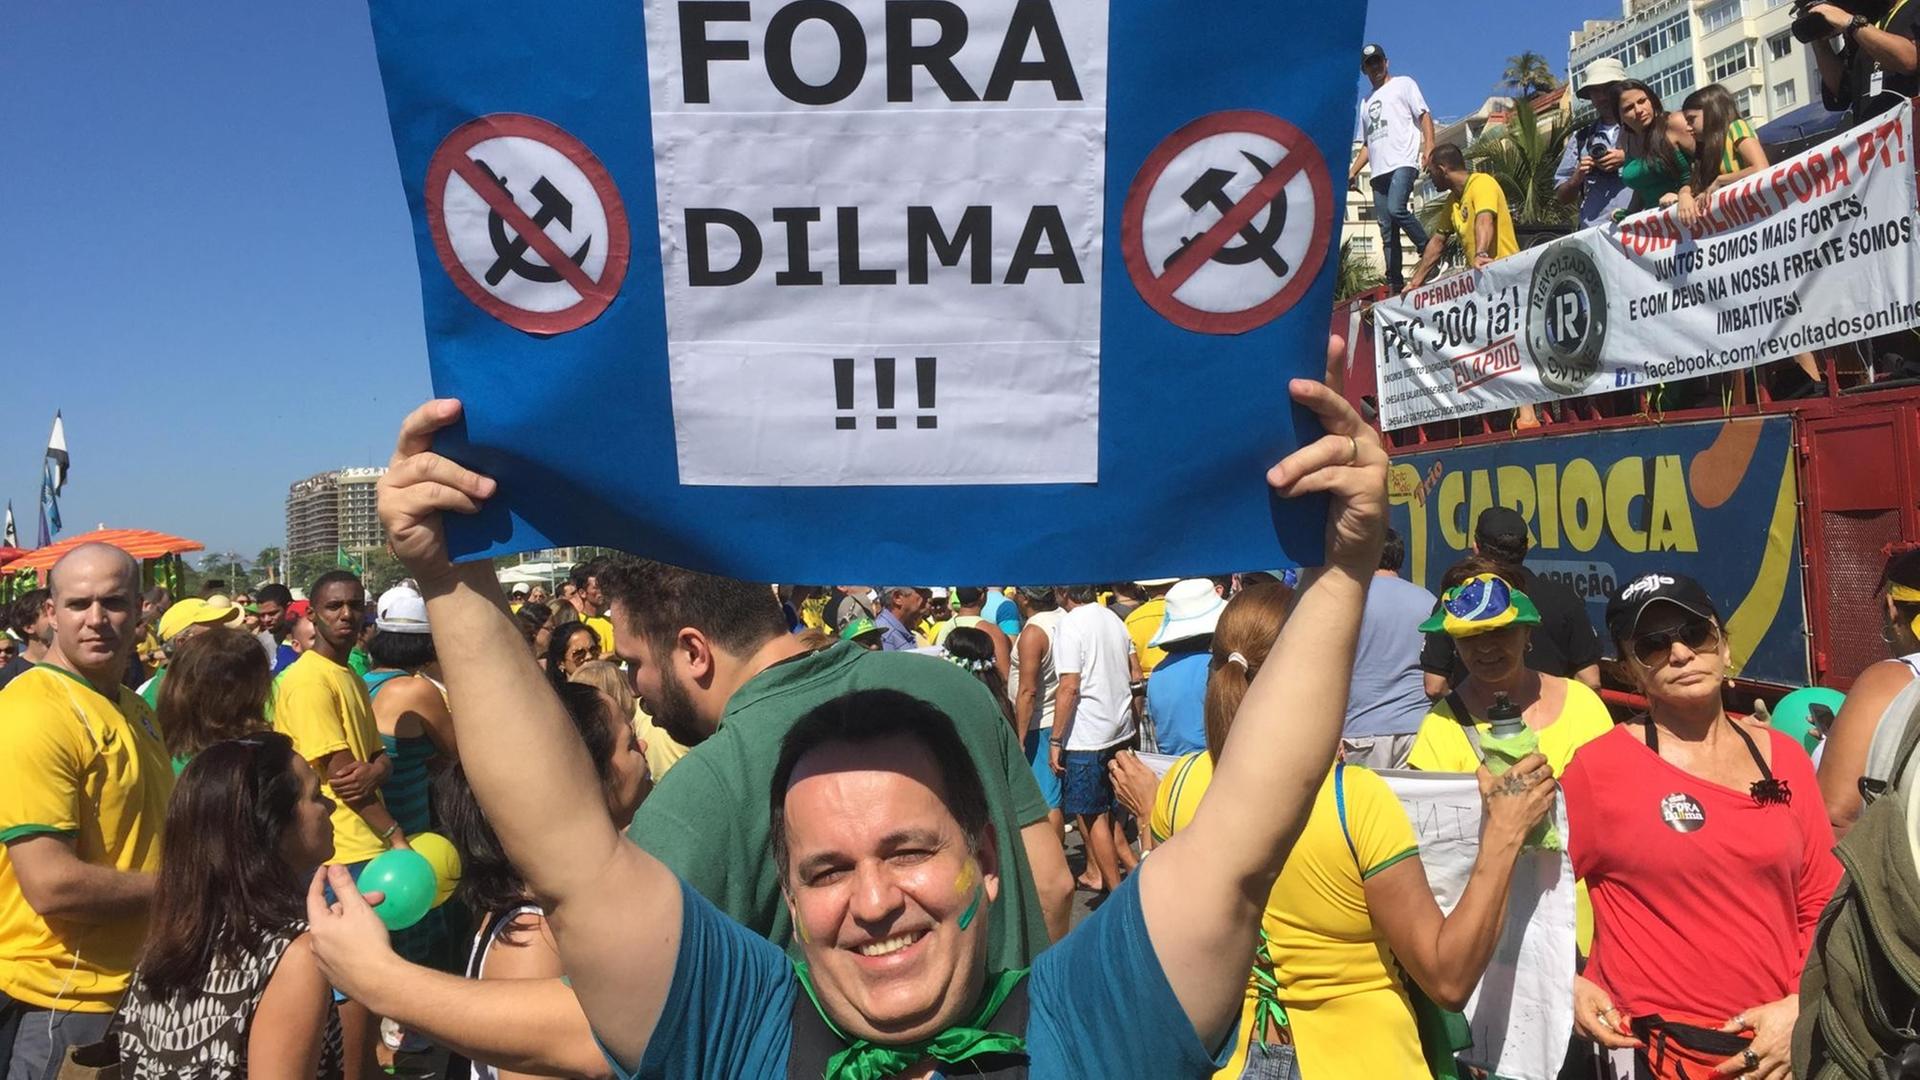 "Dilma raus" steht auf vielen Plakaten der Demonstranten in Rio de Janeiro